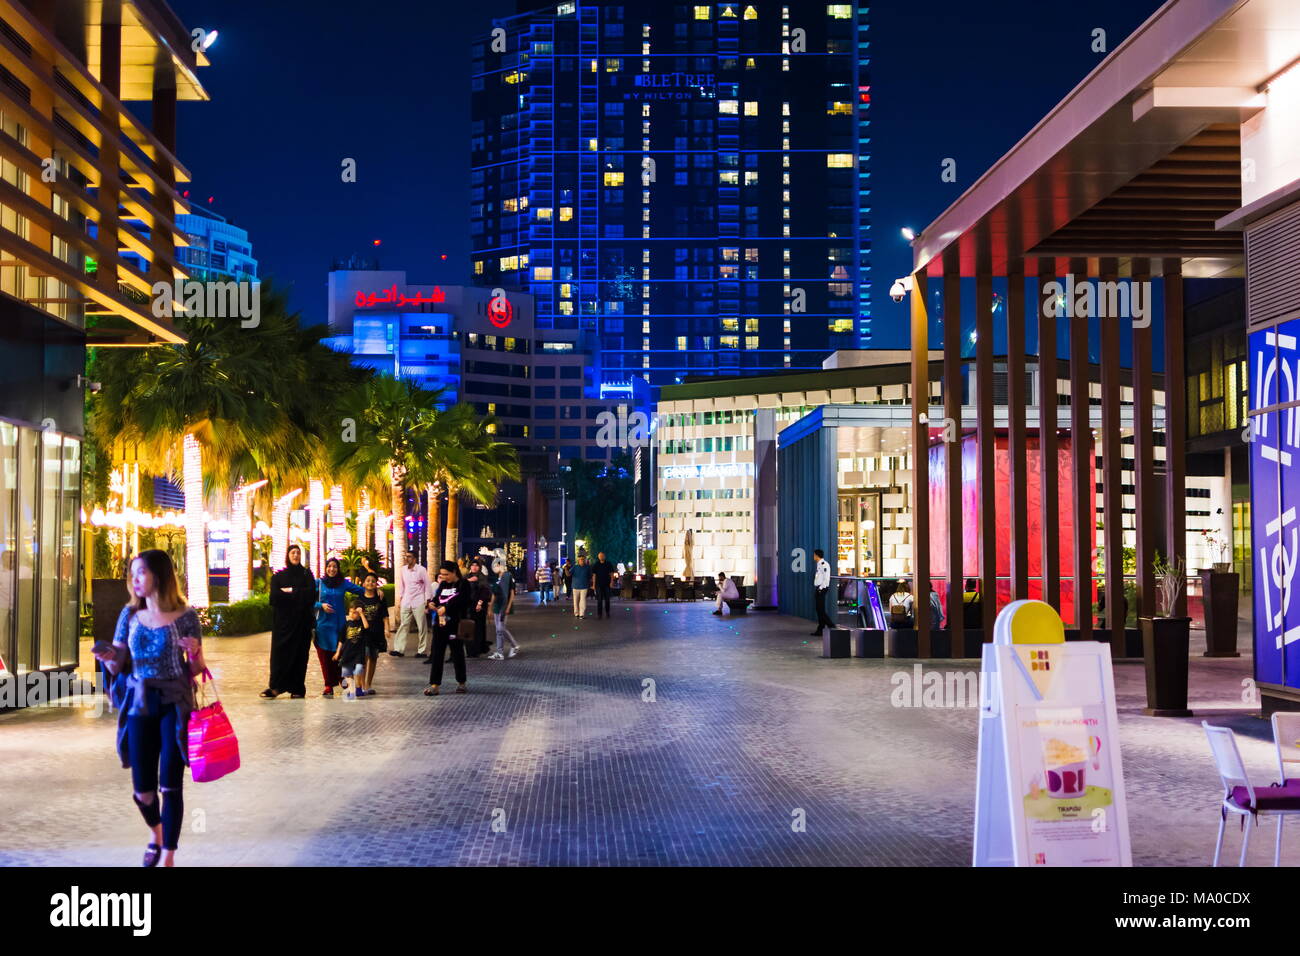 Dubai, Vereinigte Arabische Emirate - 8. März 2018: JBR, Jumeirah Beach Resort Promenade bei Nacht mit Menschen zu Fuß, eine neue touristische Attraktion und residenti Stockfoto